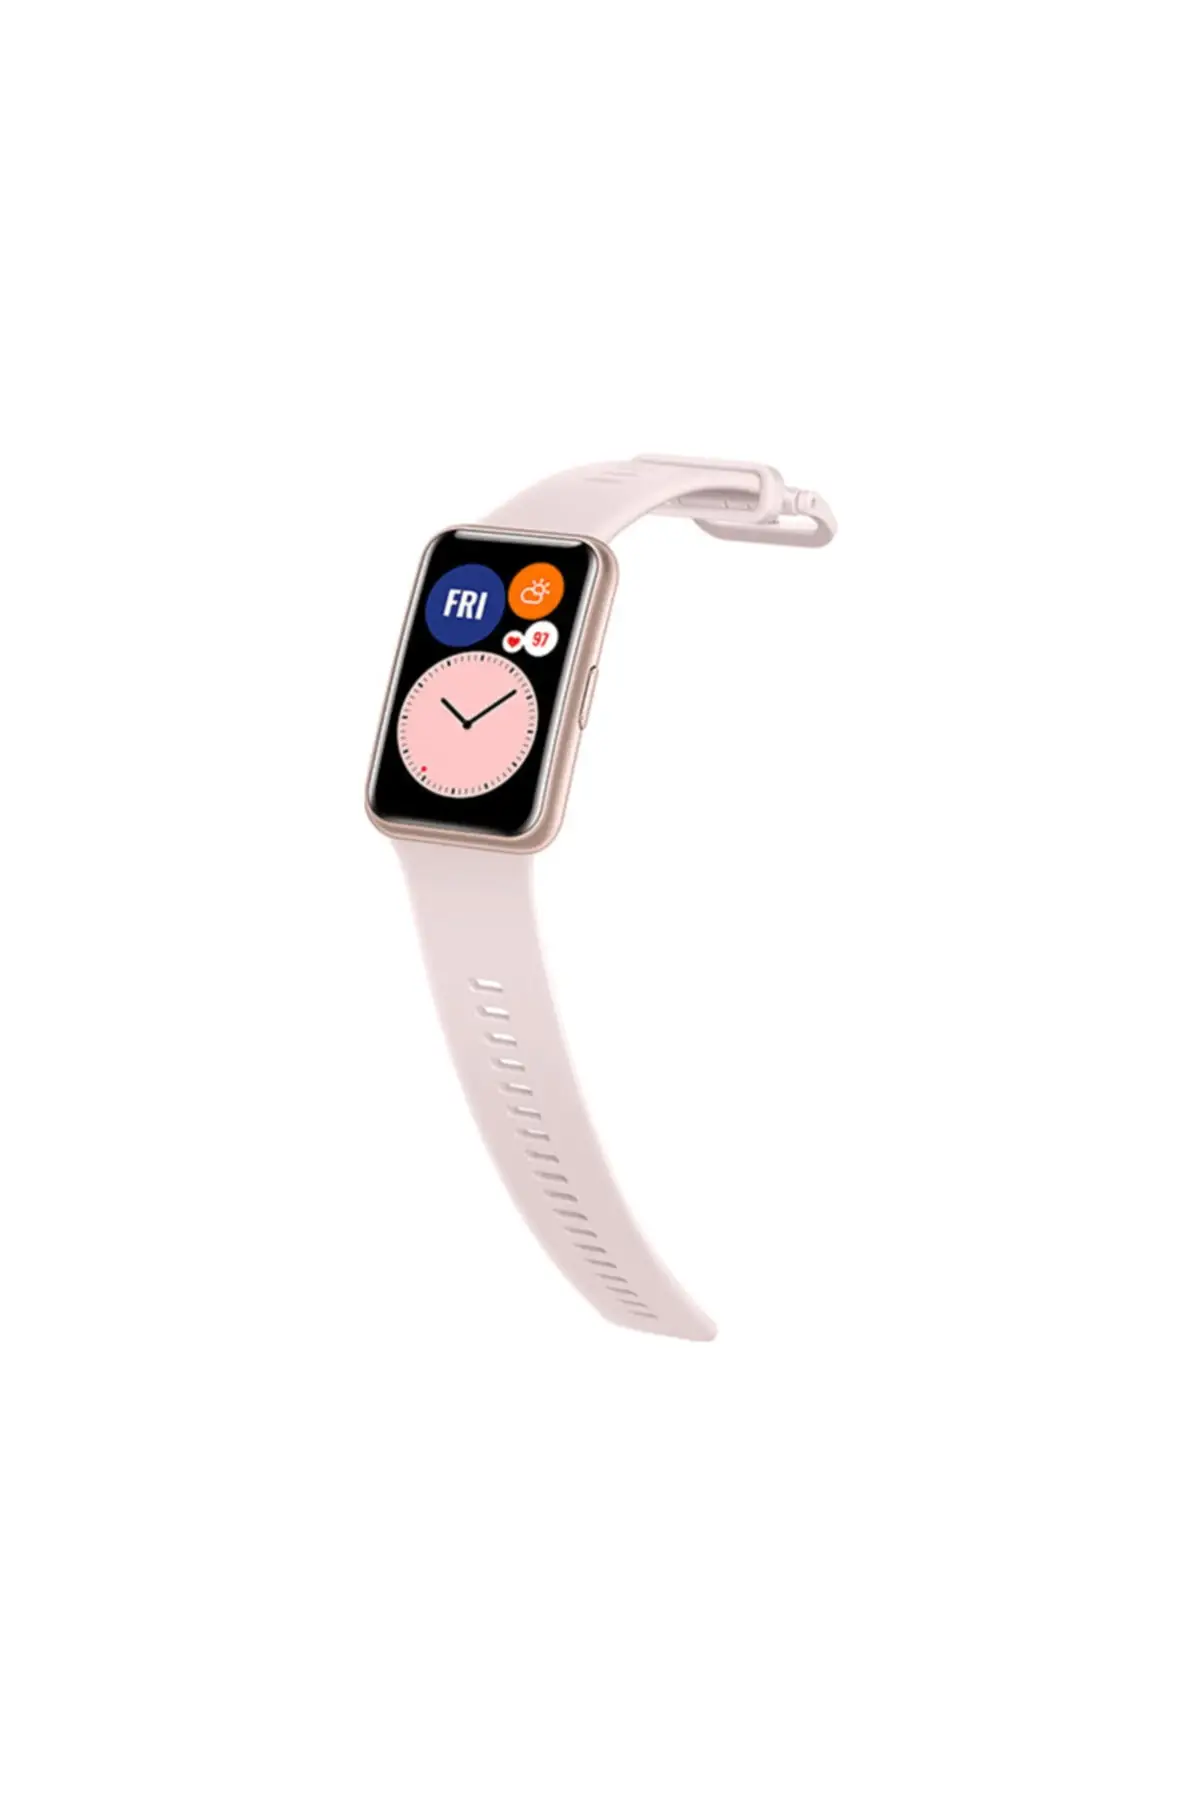 Huawei watch fit sakura